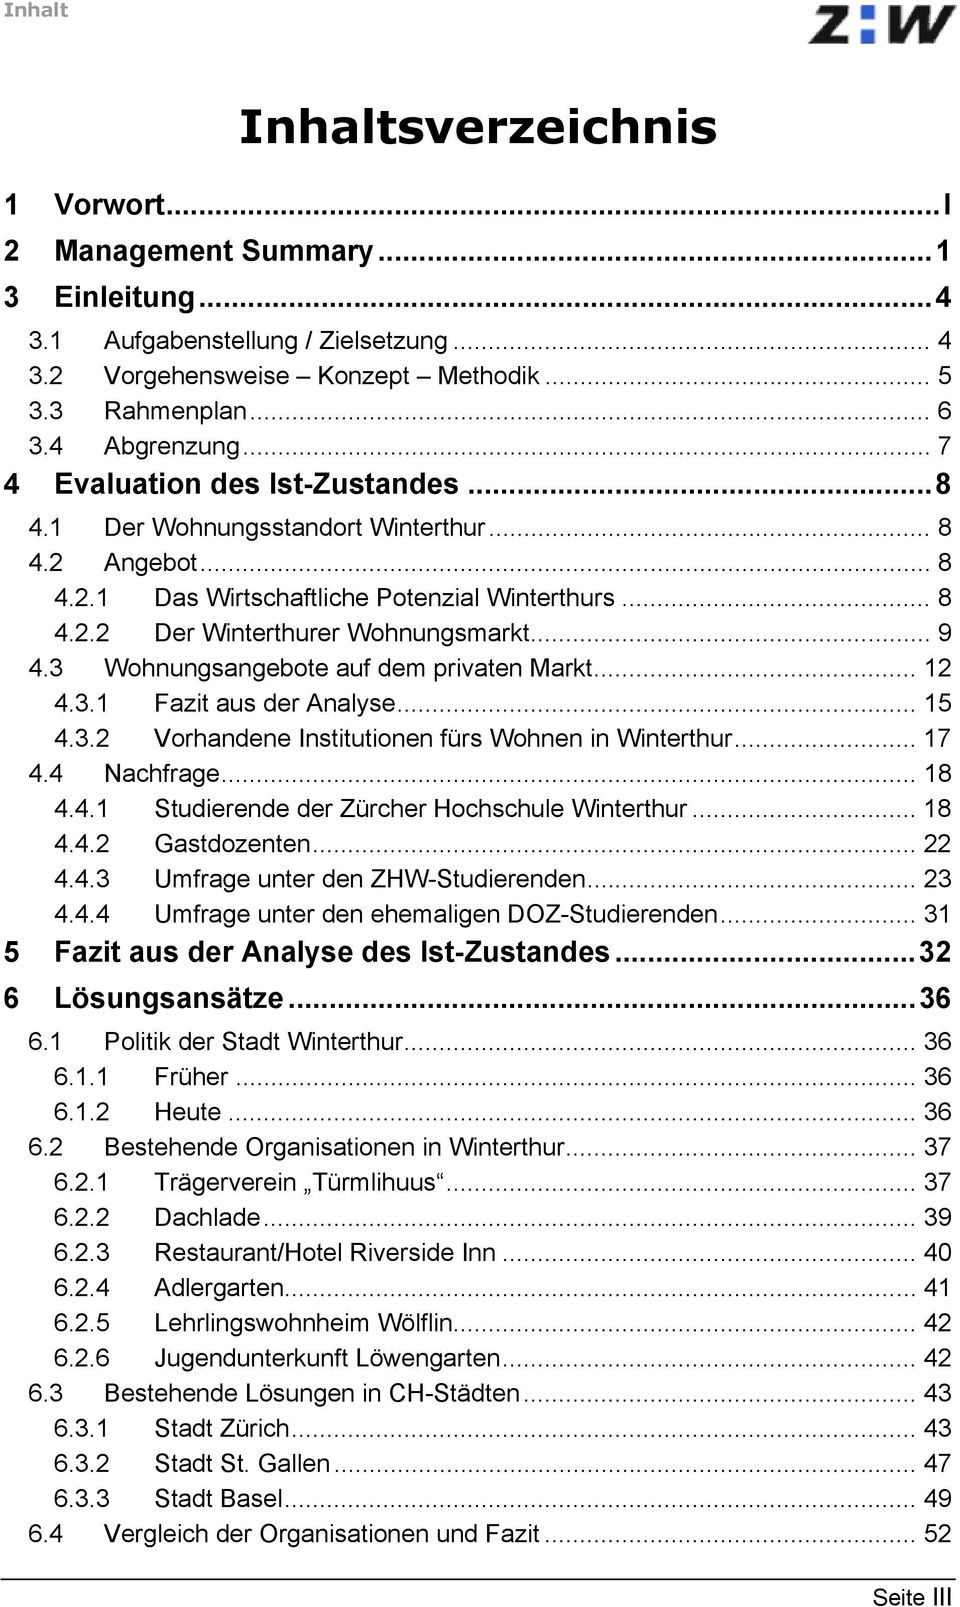 3 Wohnungsangebote auf dem privaten Markt... 12 4.3.1 Fazit aus der Analyse... 15 4.3.2 Vorhandene Institutionen fürs Wohnen in Winterthur... 17 4.4 Nachfrage... 18 4.4.1 Studierende der Zürcher Hochschule Winterthur.